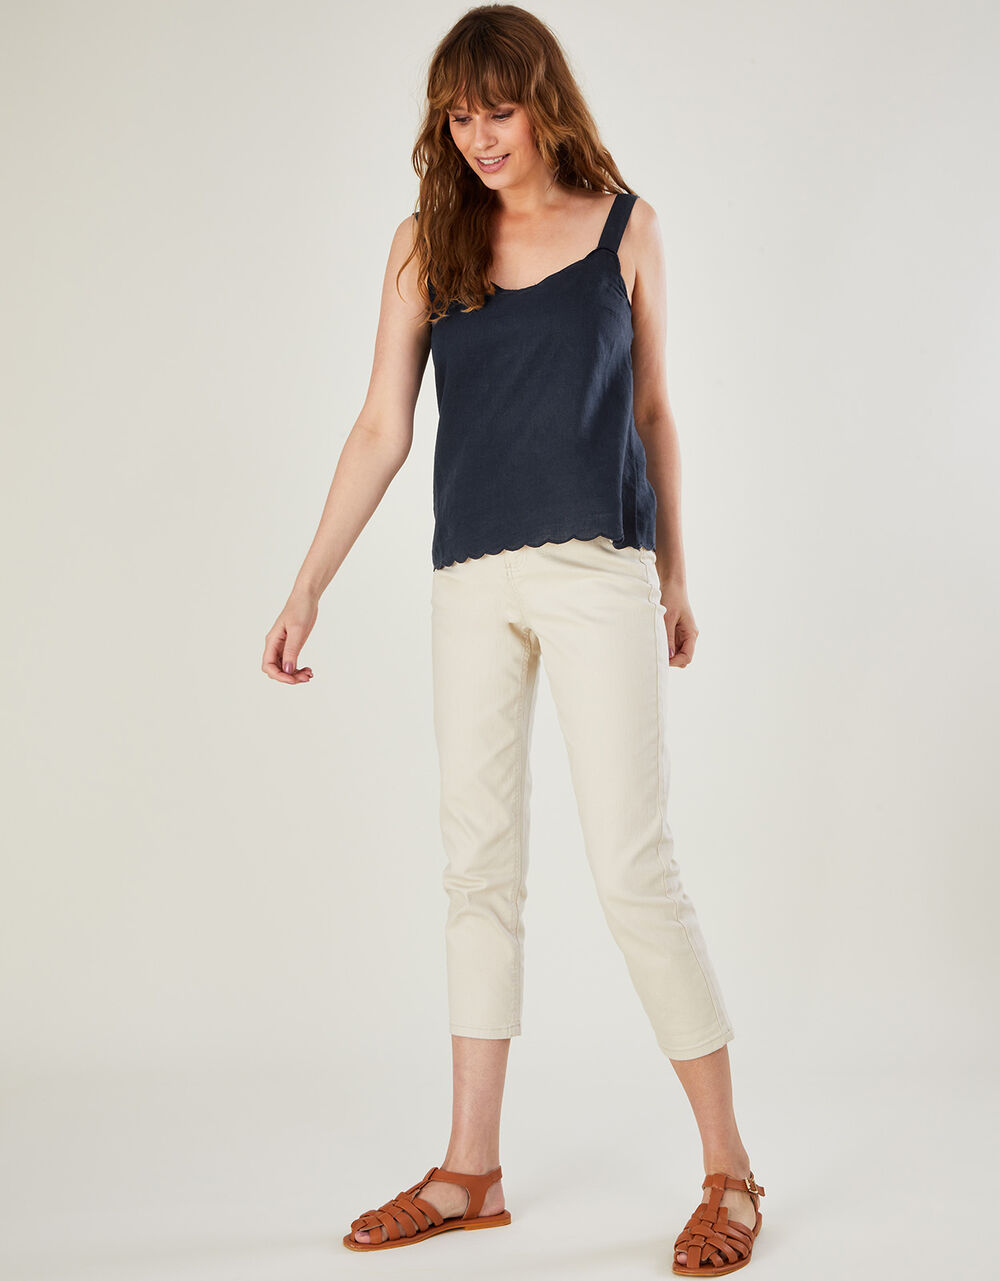 Women Women's Clothing | Scallop Plain Cami Top in Linen Blend Blue - ZT62612